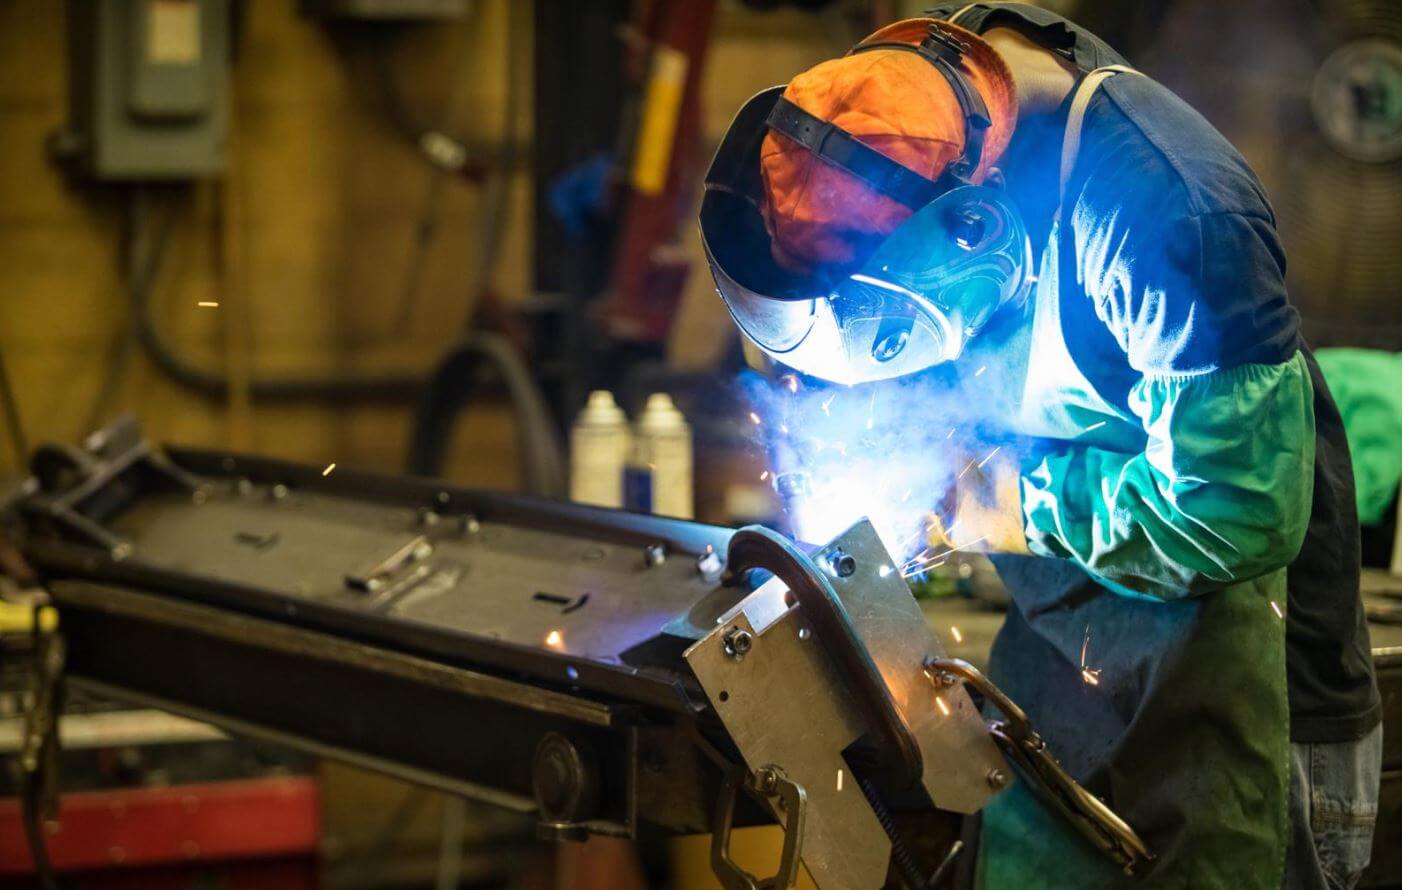 Nashville Welding | welding as a career